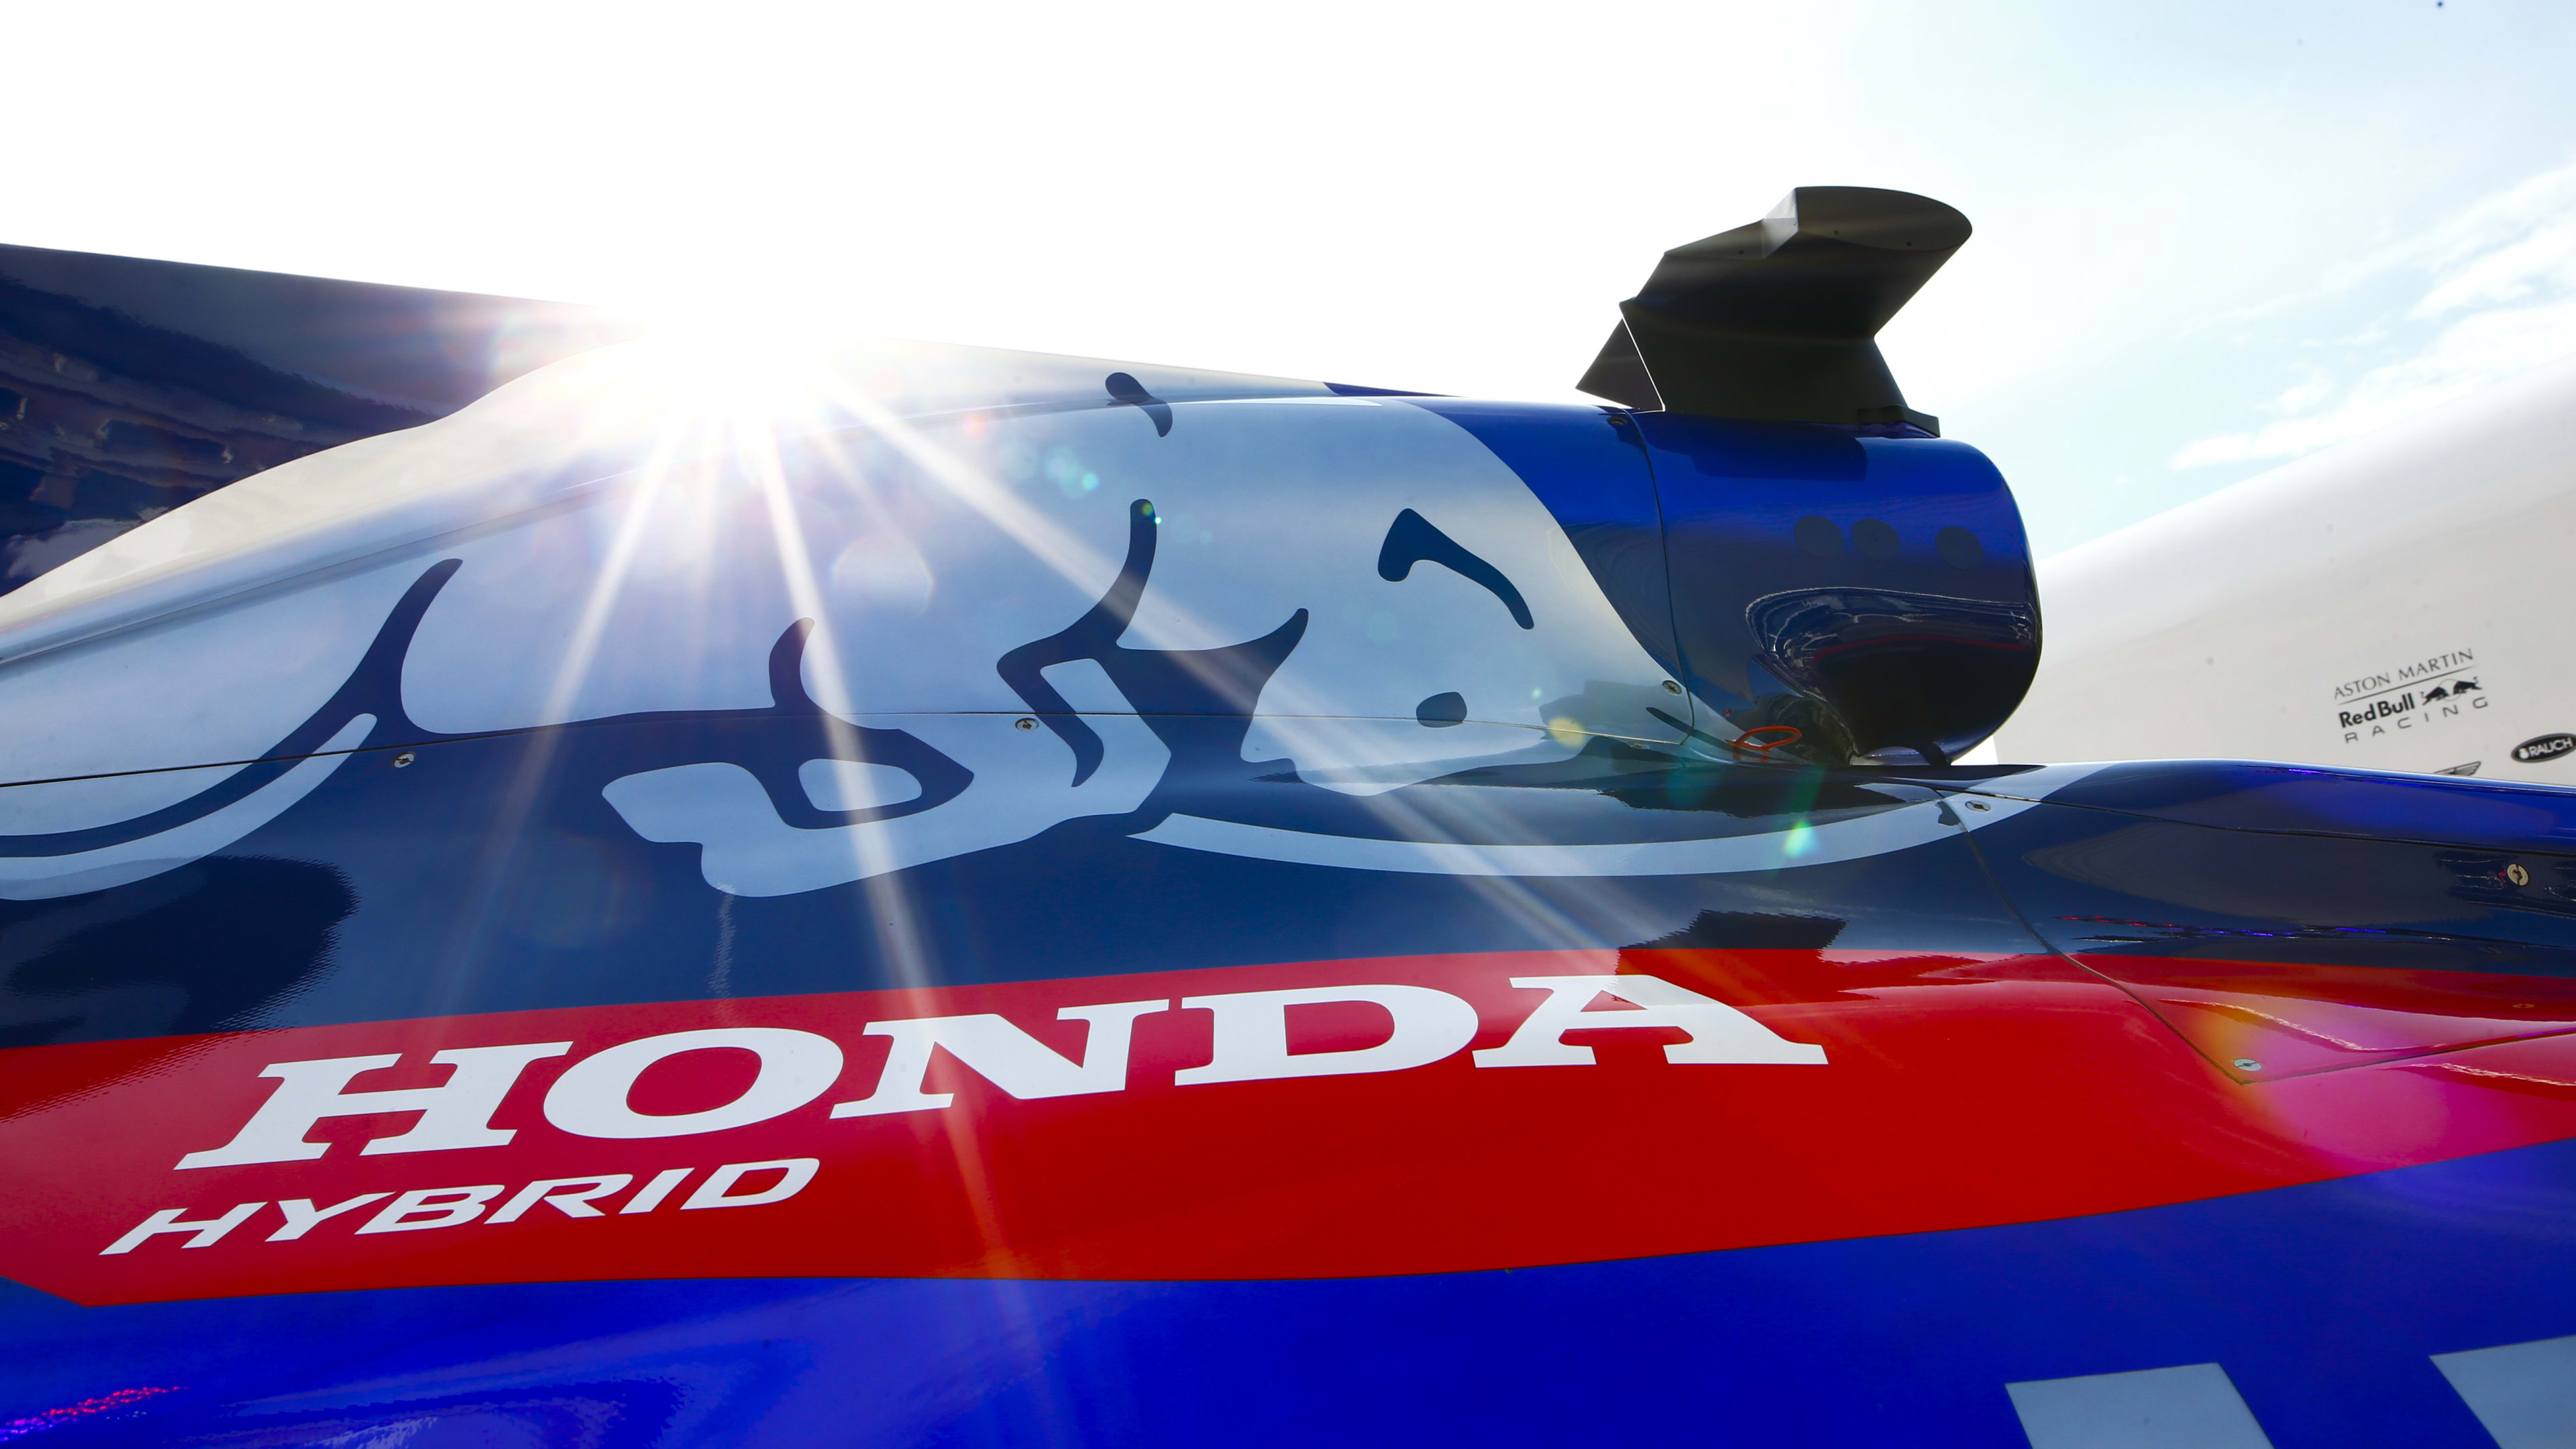 Pelmel Optagelsesgebyr Rundt og rundt With Red Bull in wings, Honda already focused on 2019 engine